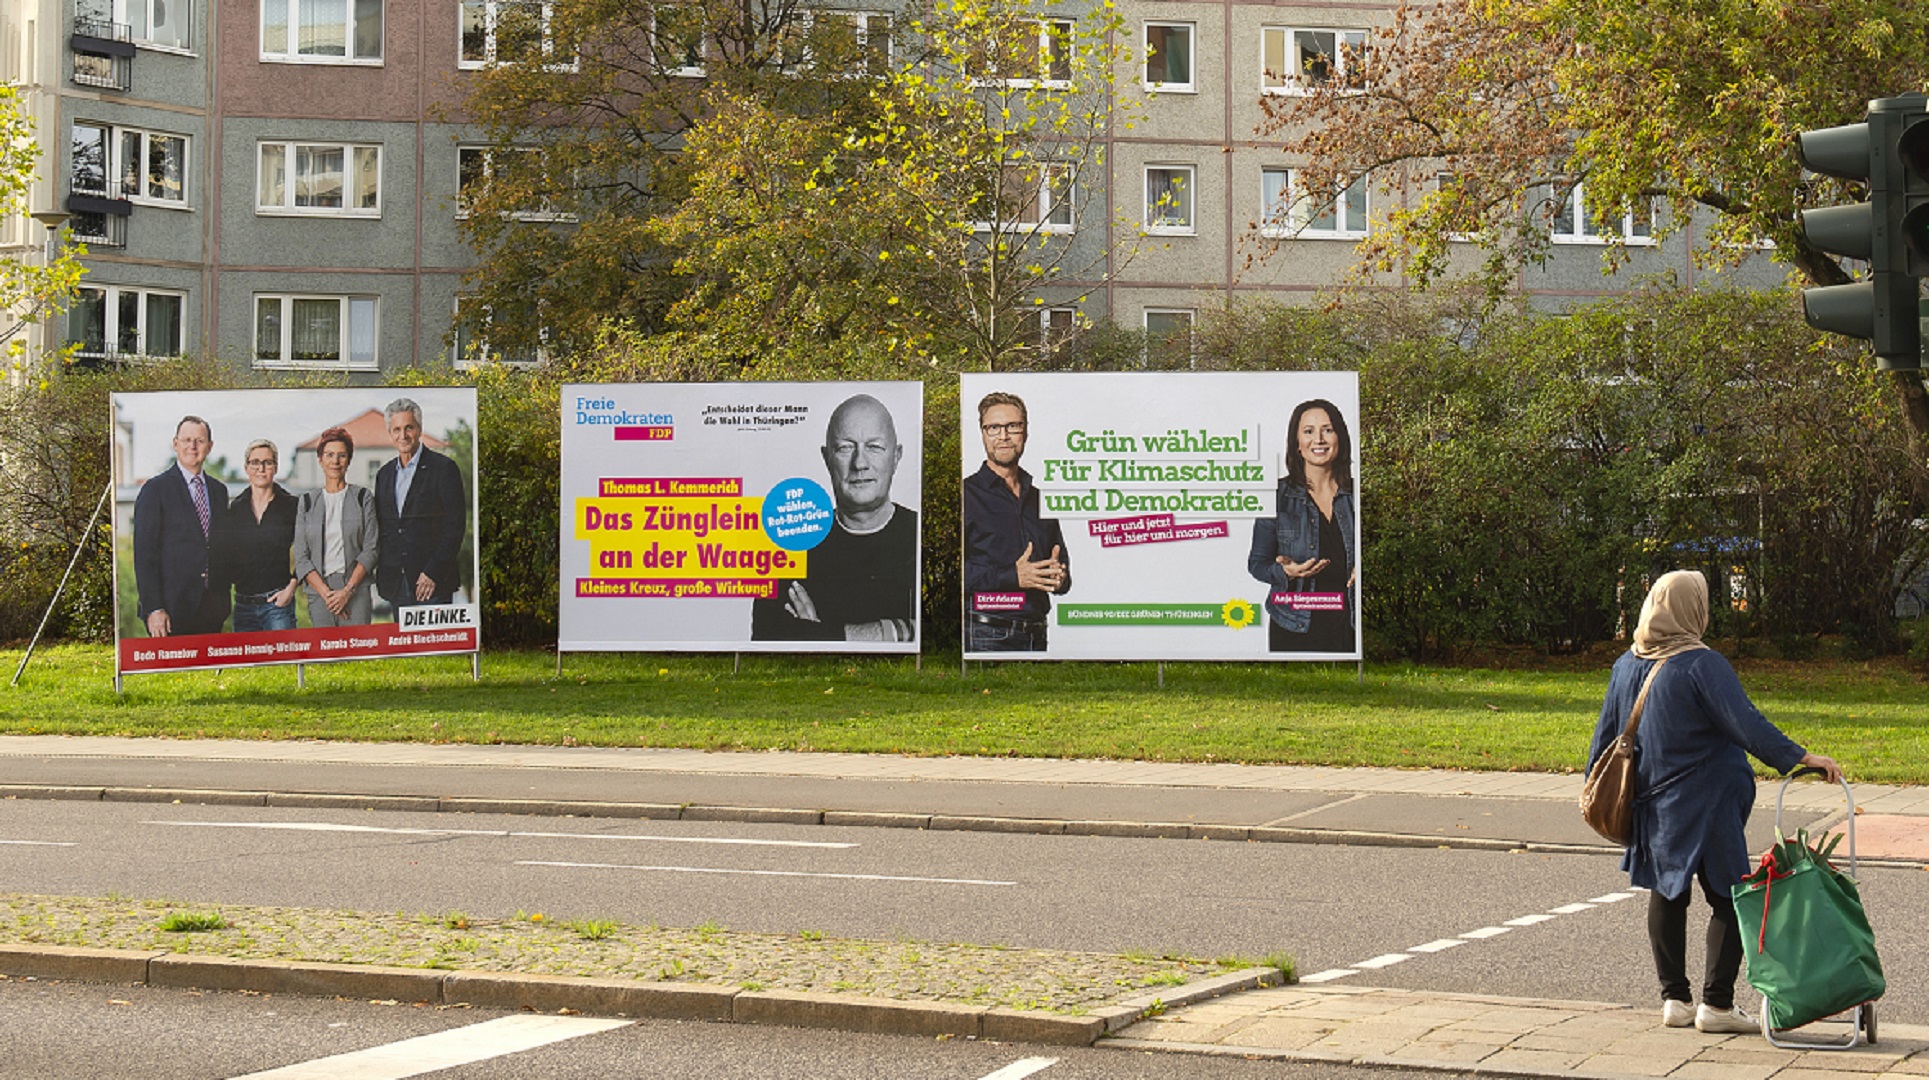 Μάχη για την τελευταία ψήφο στις εκλογές στη Γερμανία